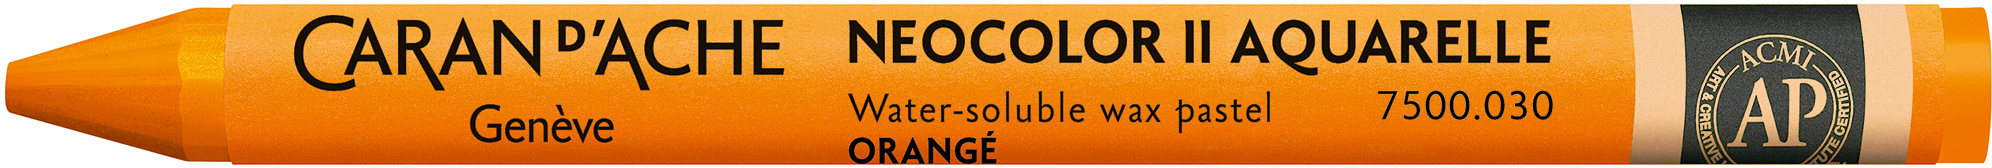 CARAN D'ACHE Crayons de cire Neocolor II 7500.030 orange